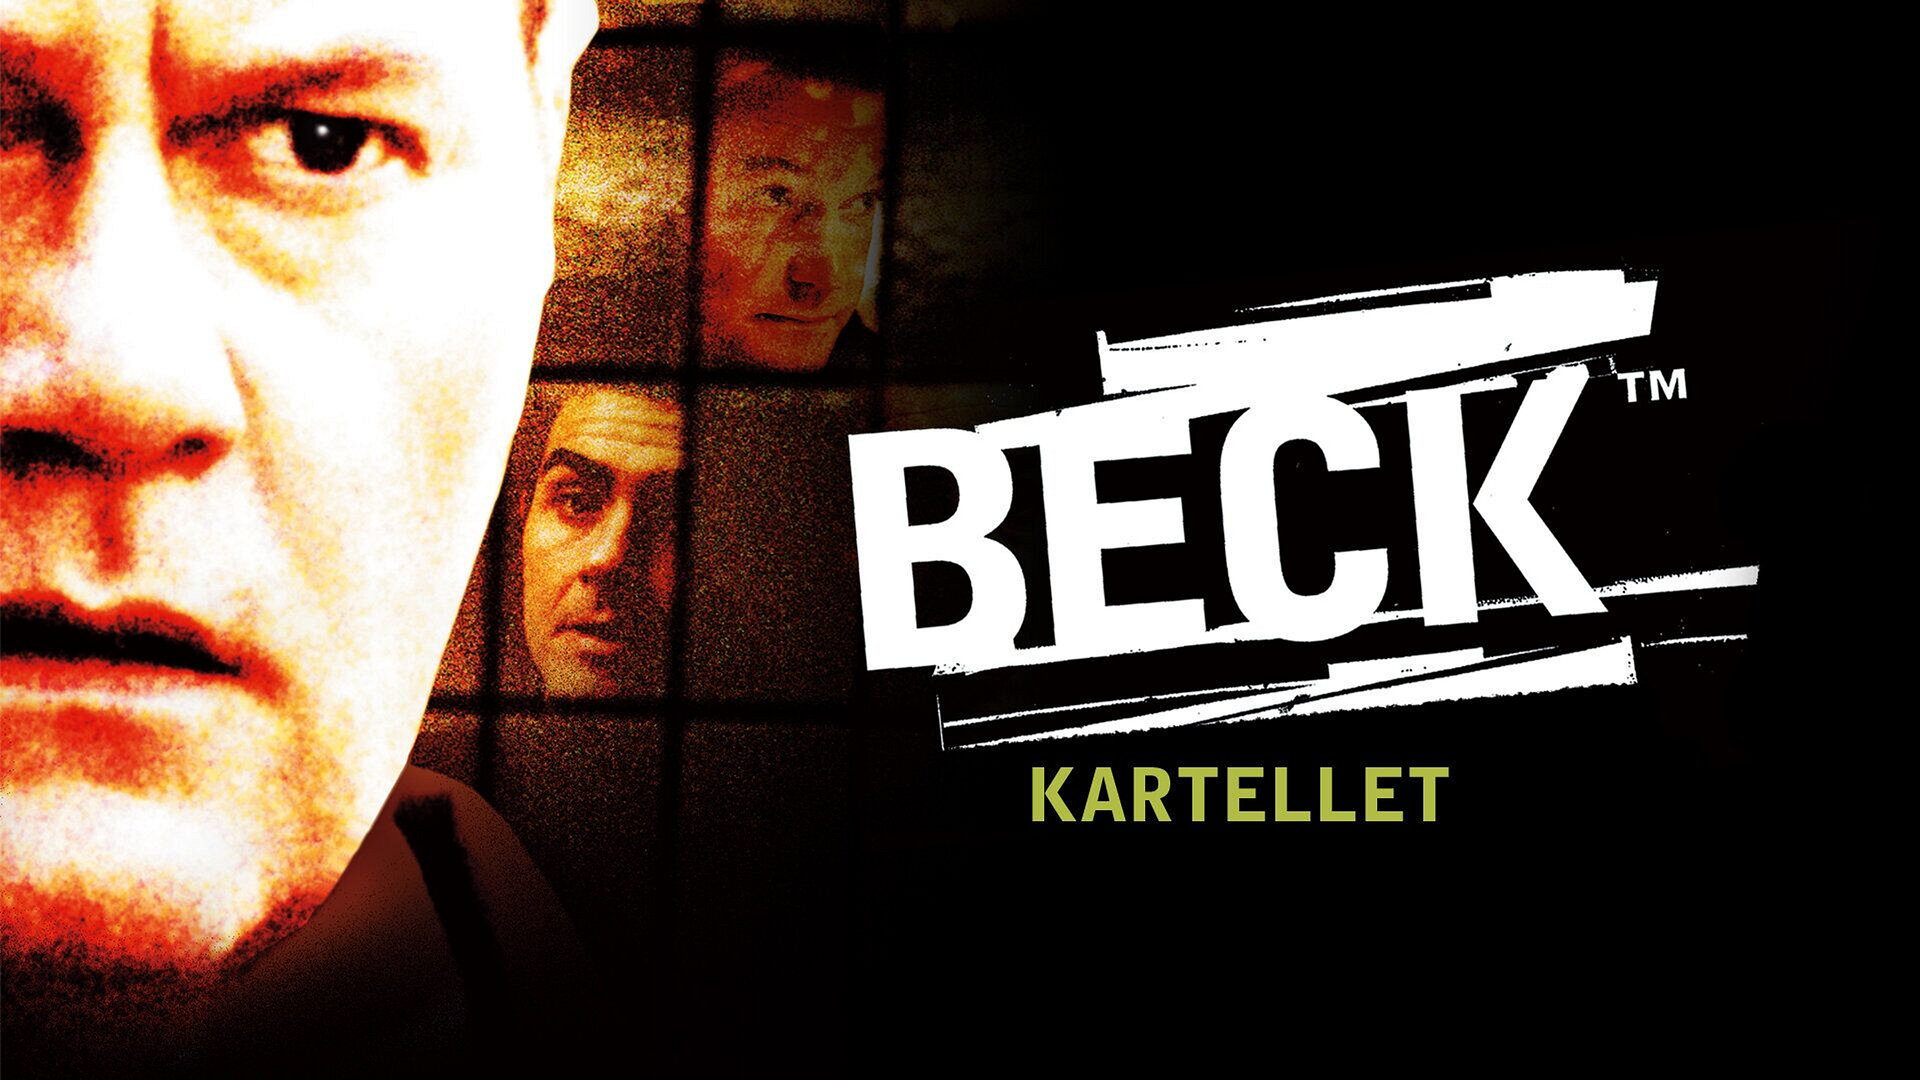 Beck - Kartellet (11)